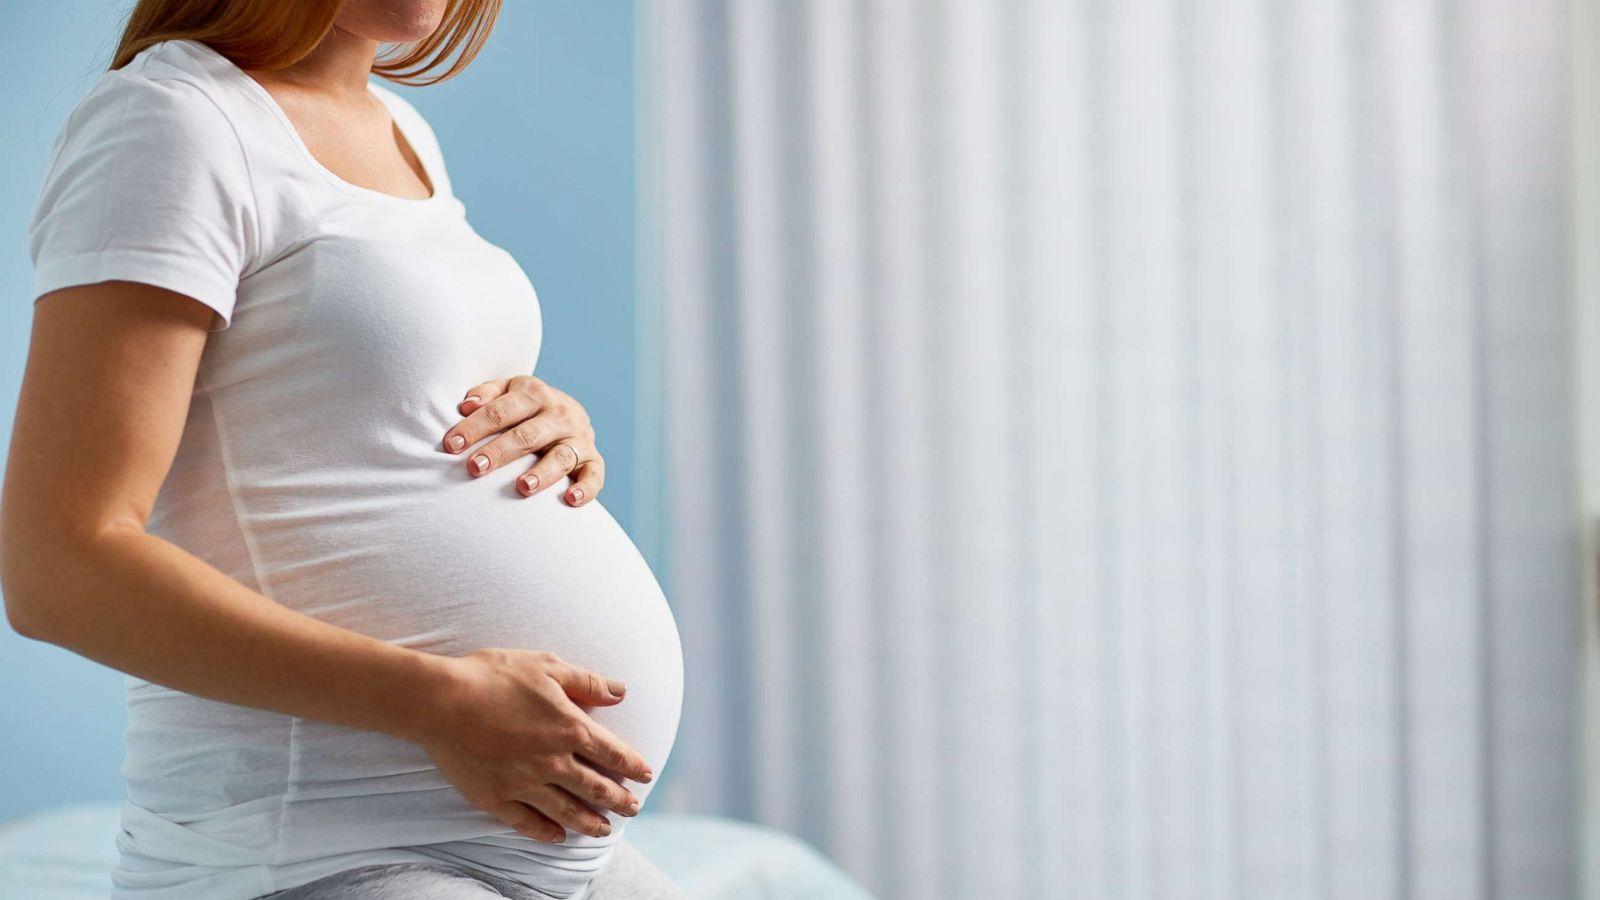 गर्भधारण एक वरदान ,उस अवस्था में महिलाएँ कैसे रखे अपना ध्यान ?